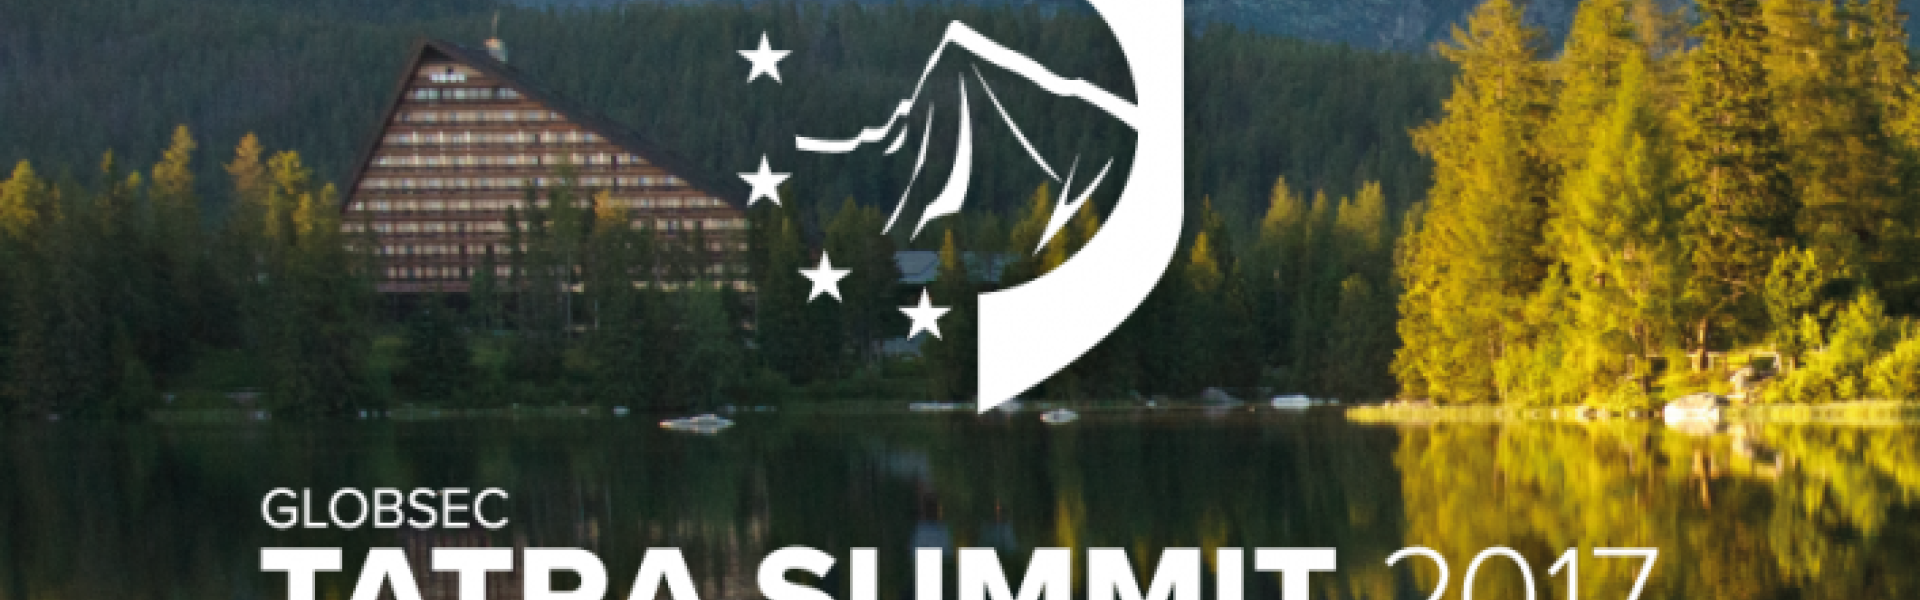 Tatra summit logo